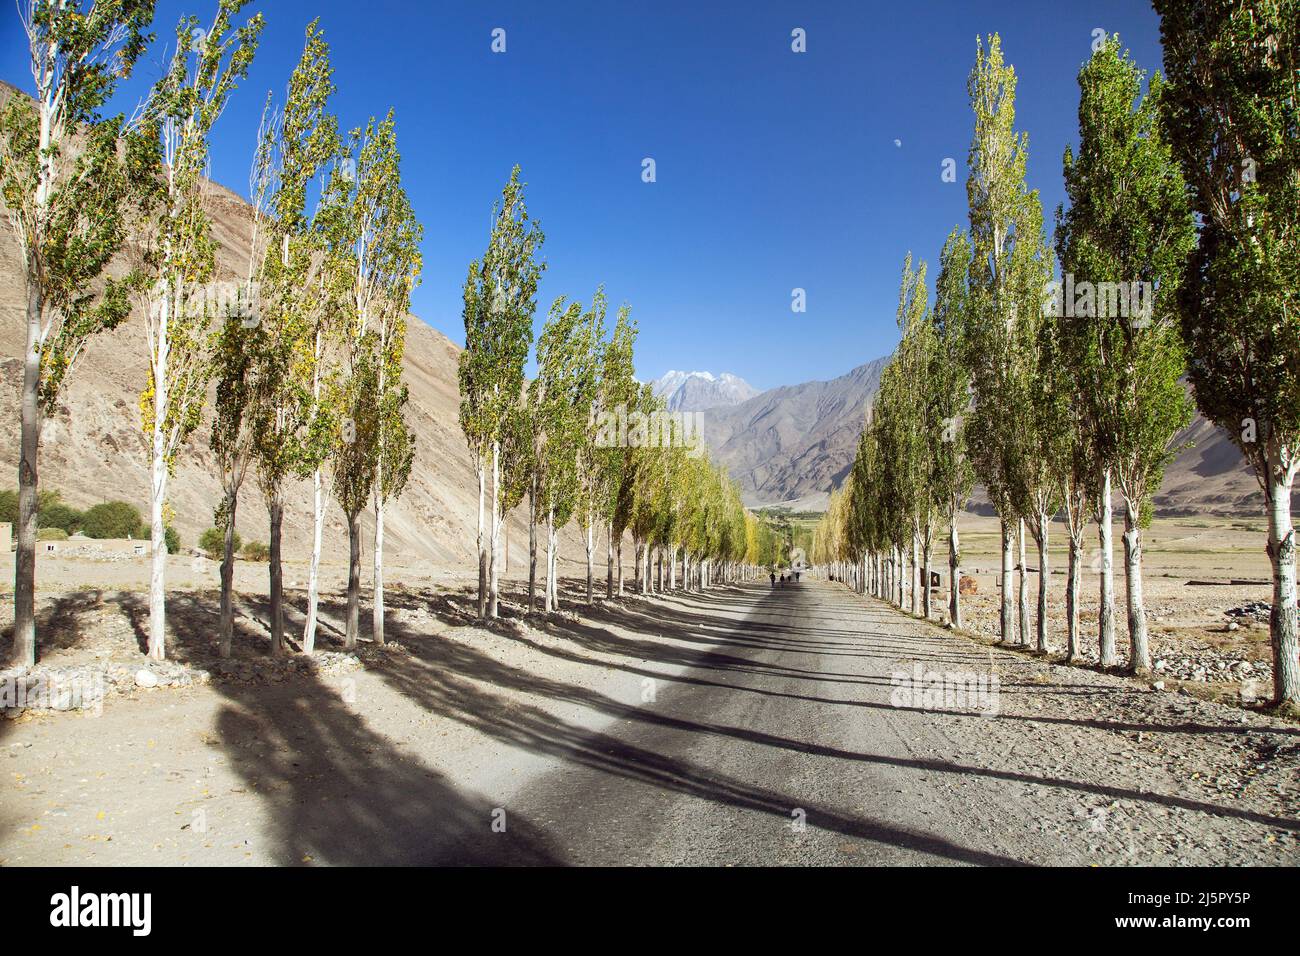 Pamir strada, strada e vicolo di alberi di pioppo e Pamir montagne, Wakhan corridoio e valle, Gorno-Badakhshan regione, Tagikistan e Afghanistan bor Foto Stock